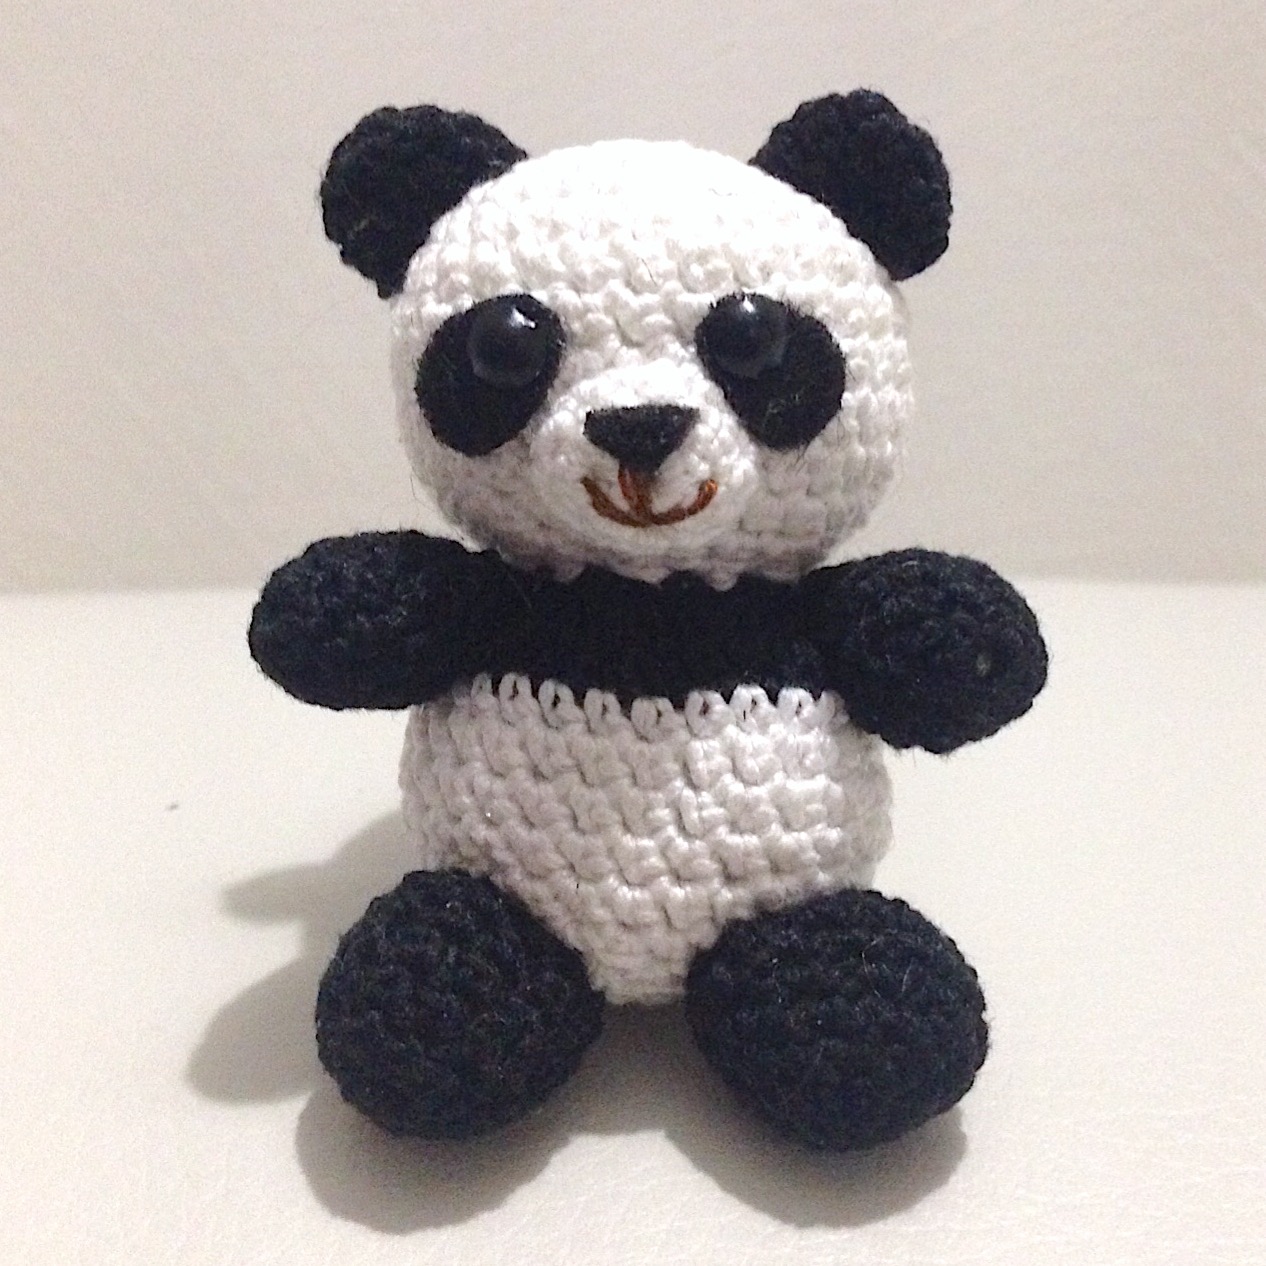 La piccola bottega della Creatività: Panda amigurumi - Tutorial